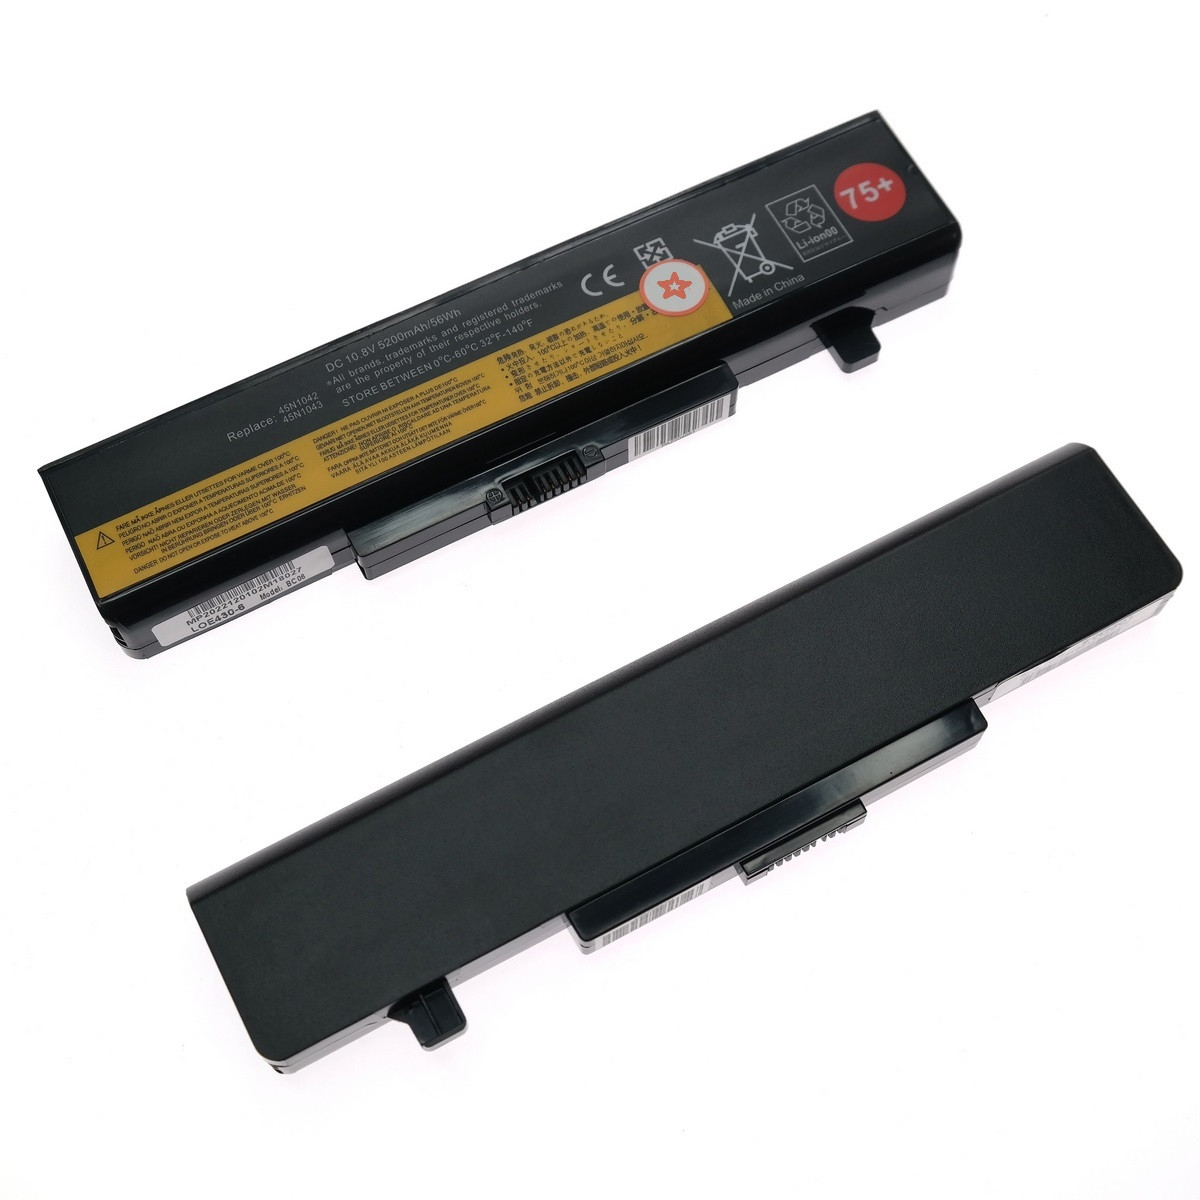 Батарея для ноутбука Lenovo IdeaPad B585 B595 E430 E435 li-ion 10,8v 4400mah черный оригинал, фото 1